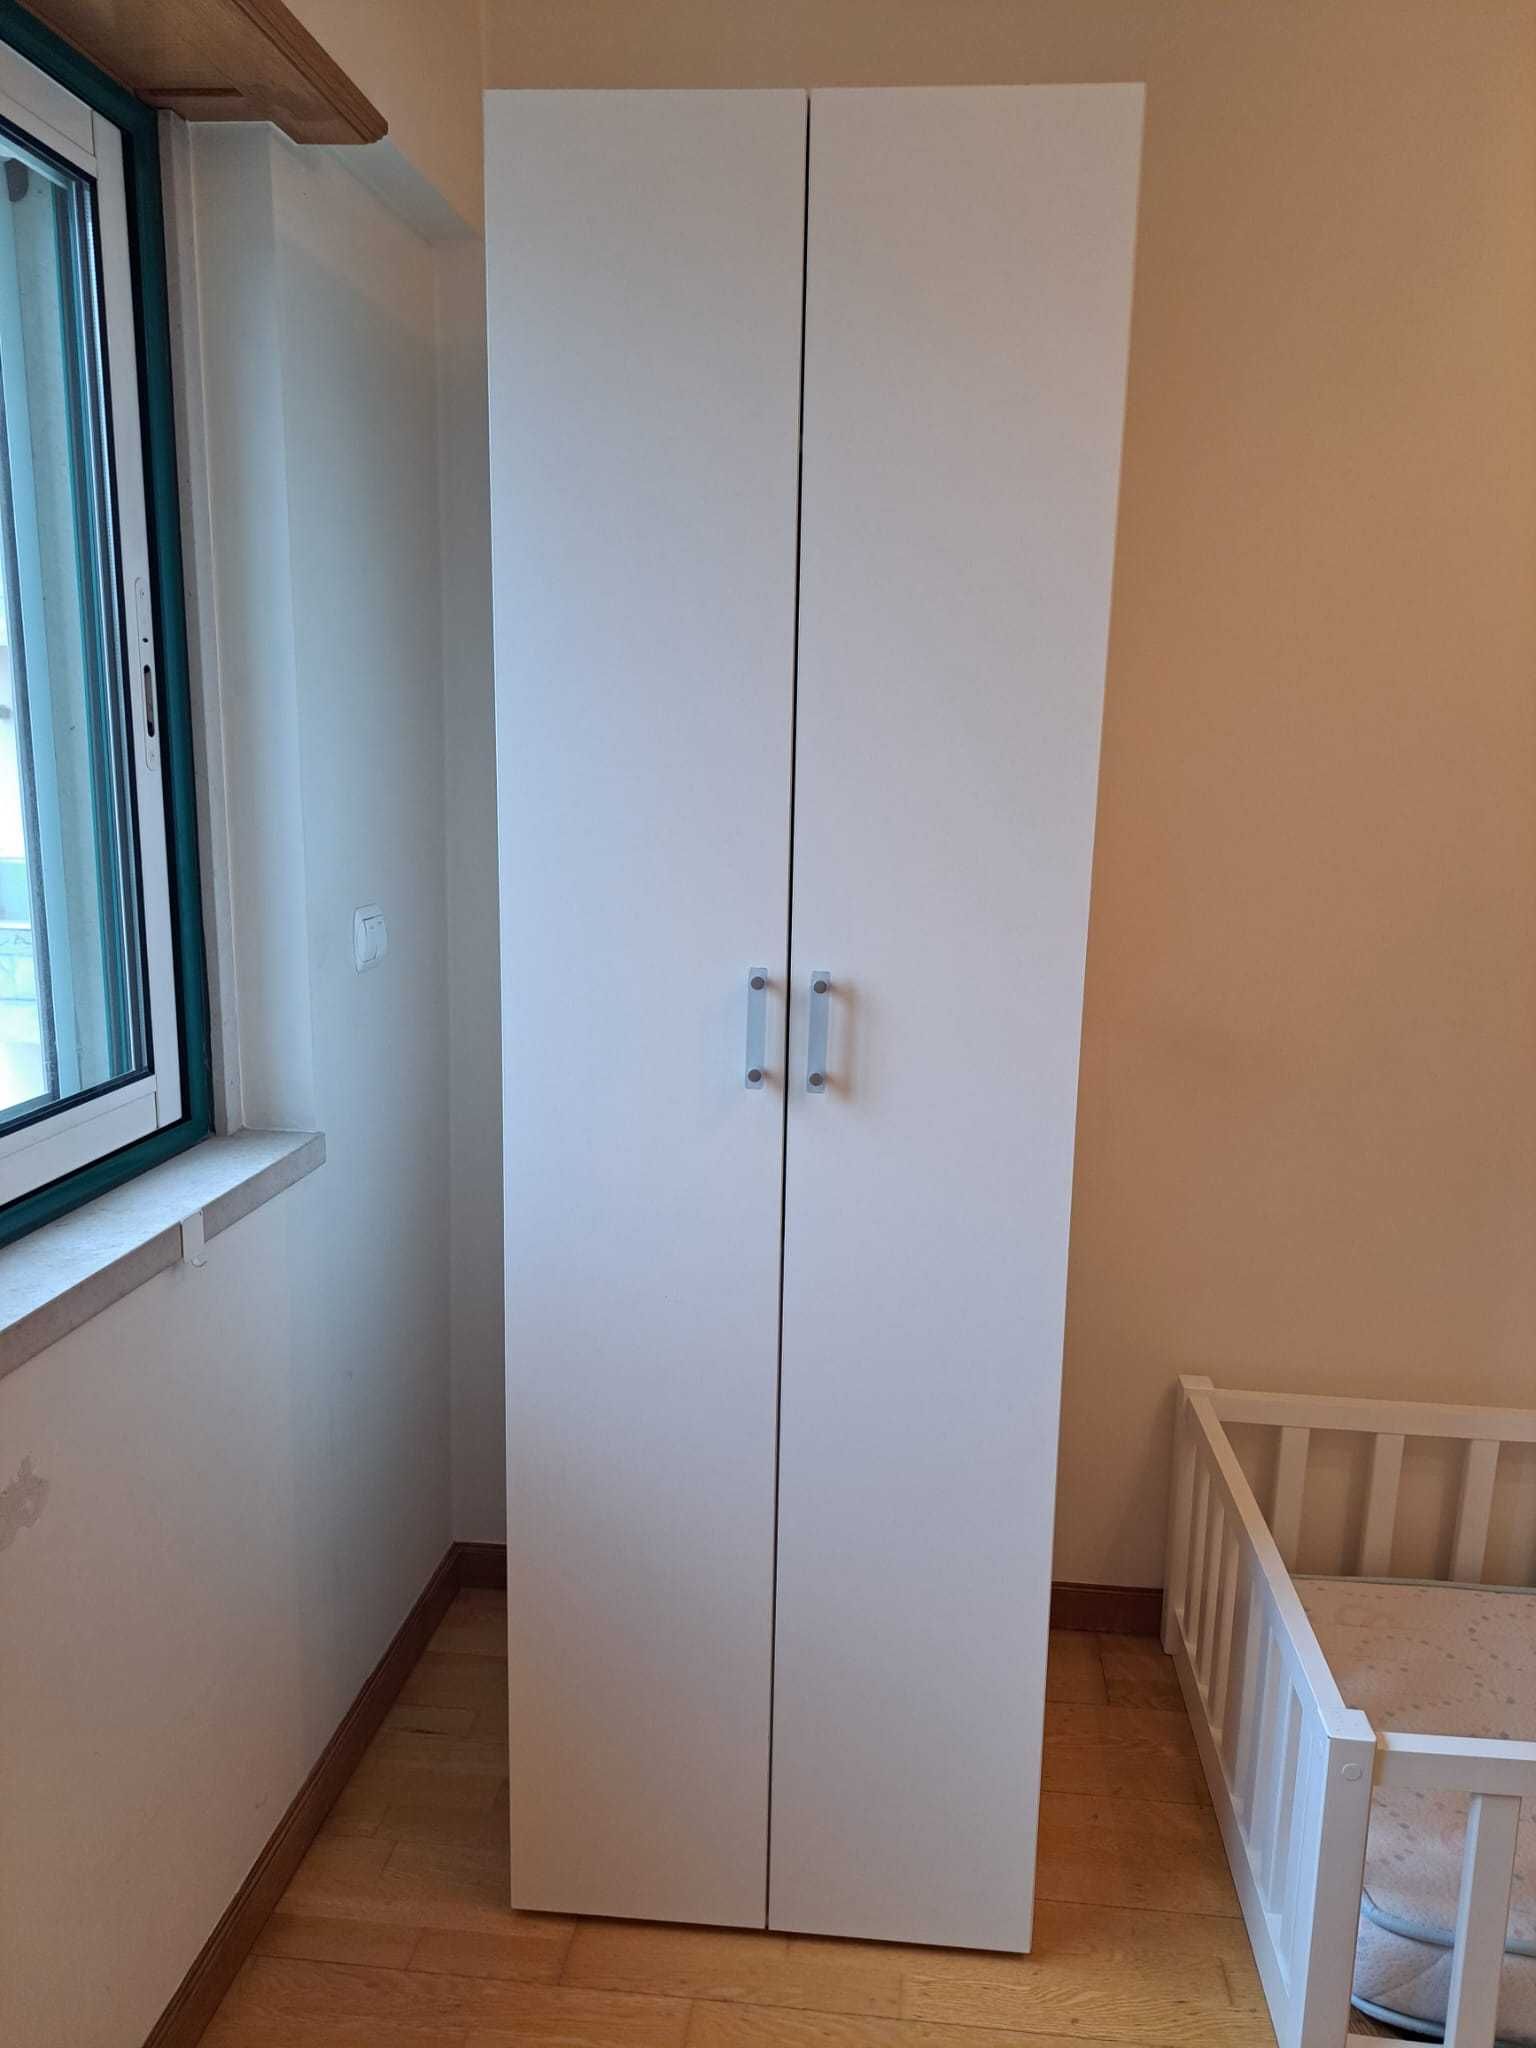 Roupeiro de criança estilo IKEA - 2 portas